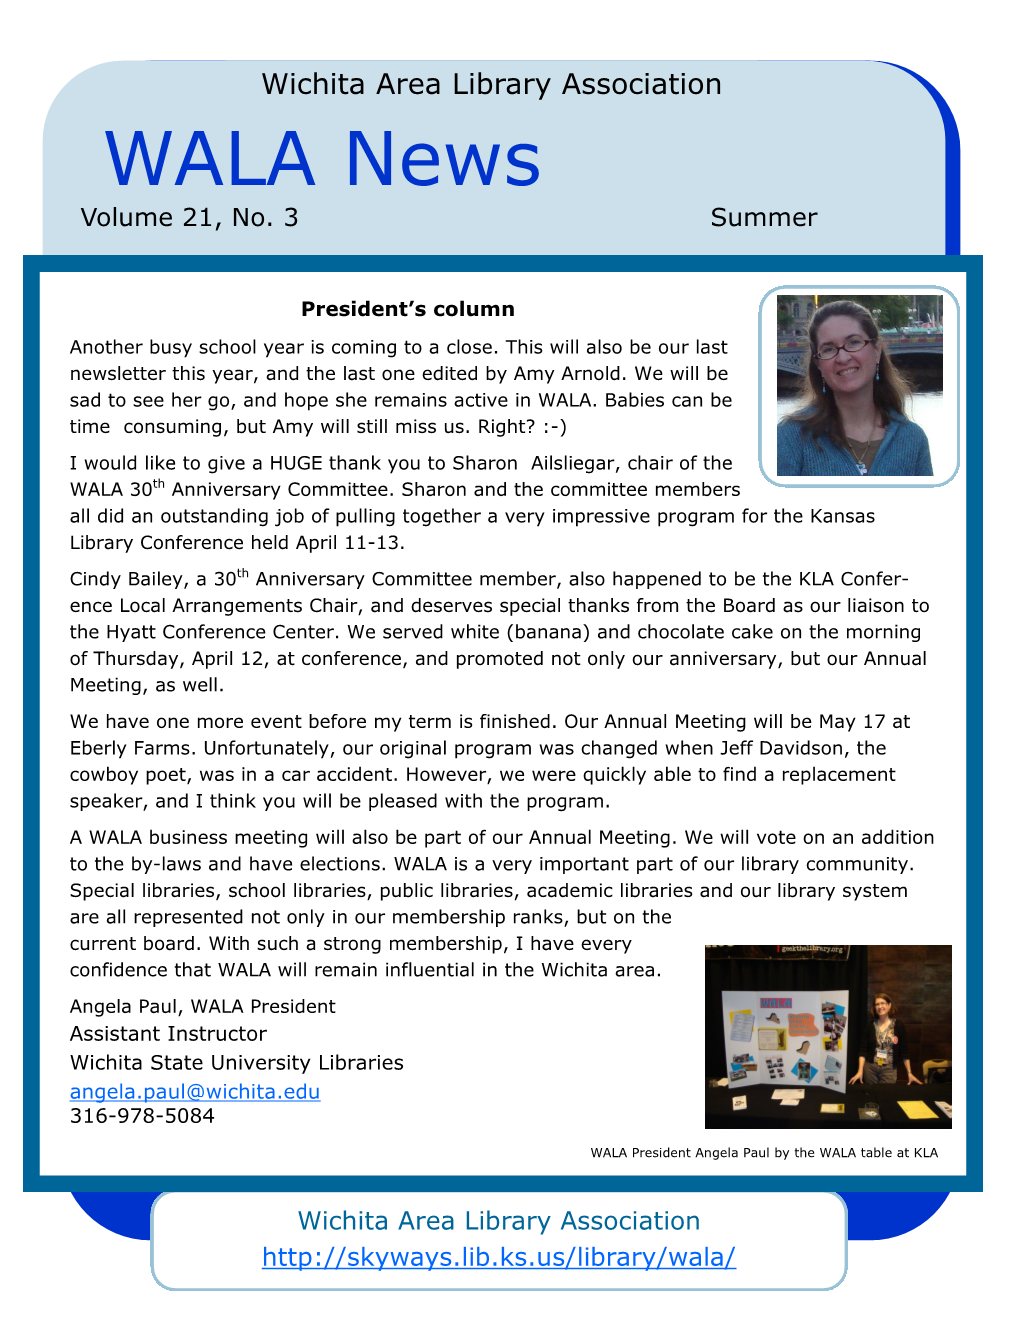 WALA News Volume 21, No